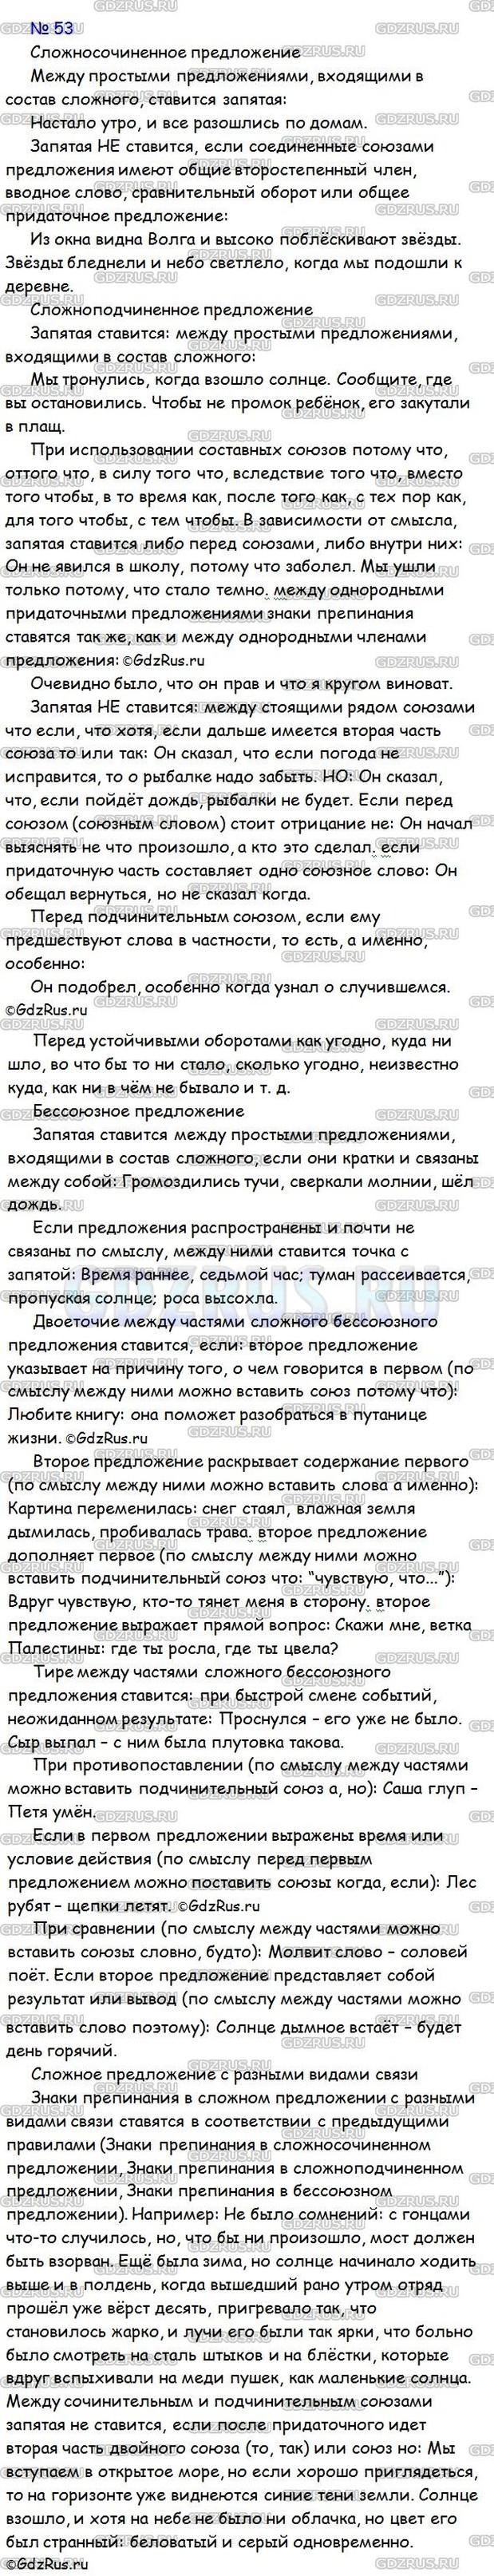 Фото решения 3: ГДЗ по Русскому языку 9 класса: Ладыженская Упр. 53